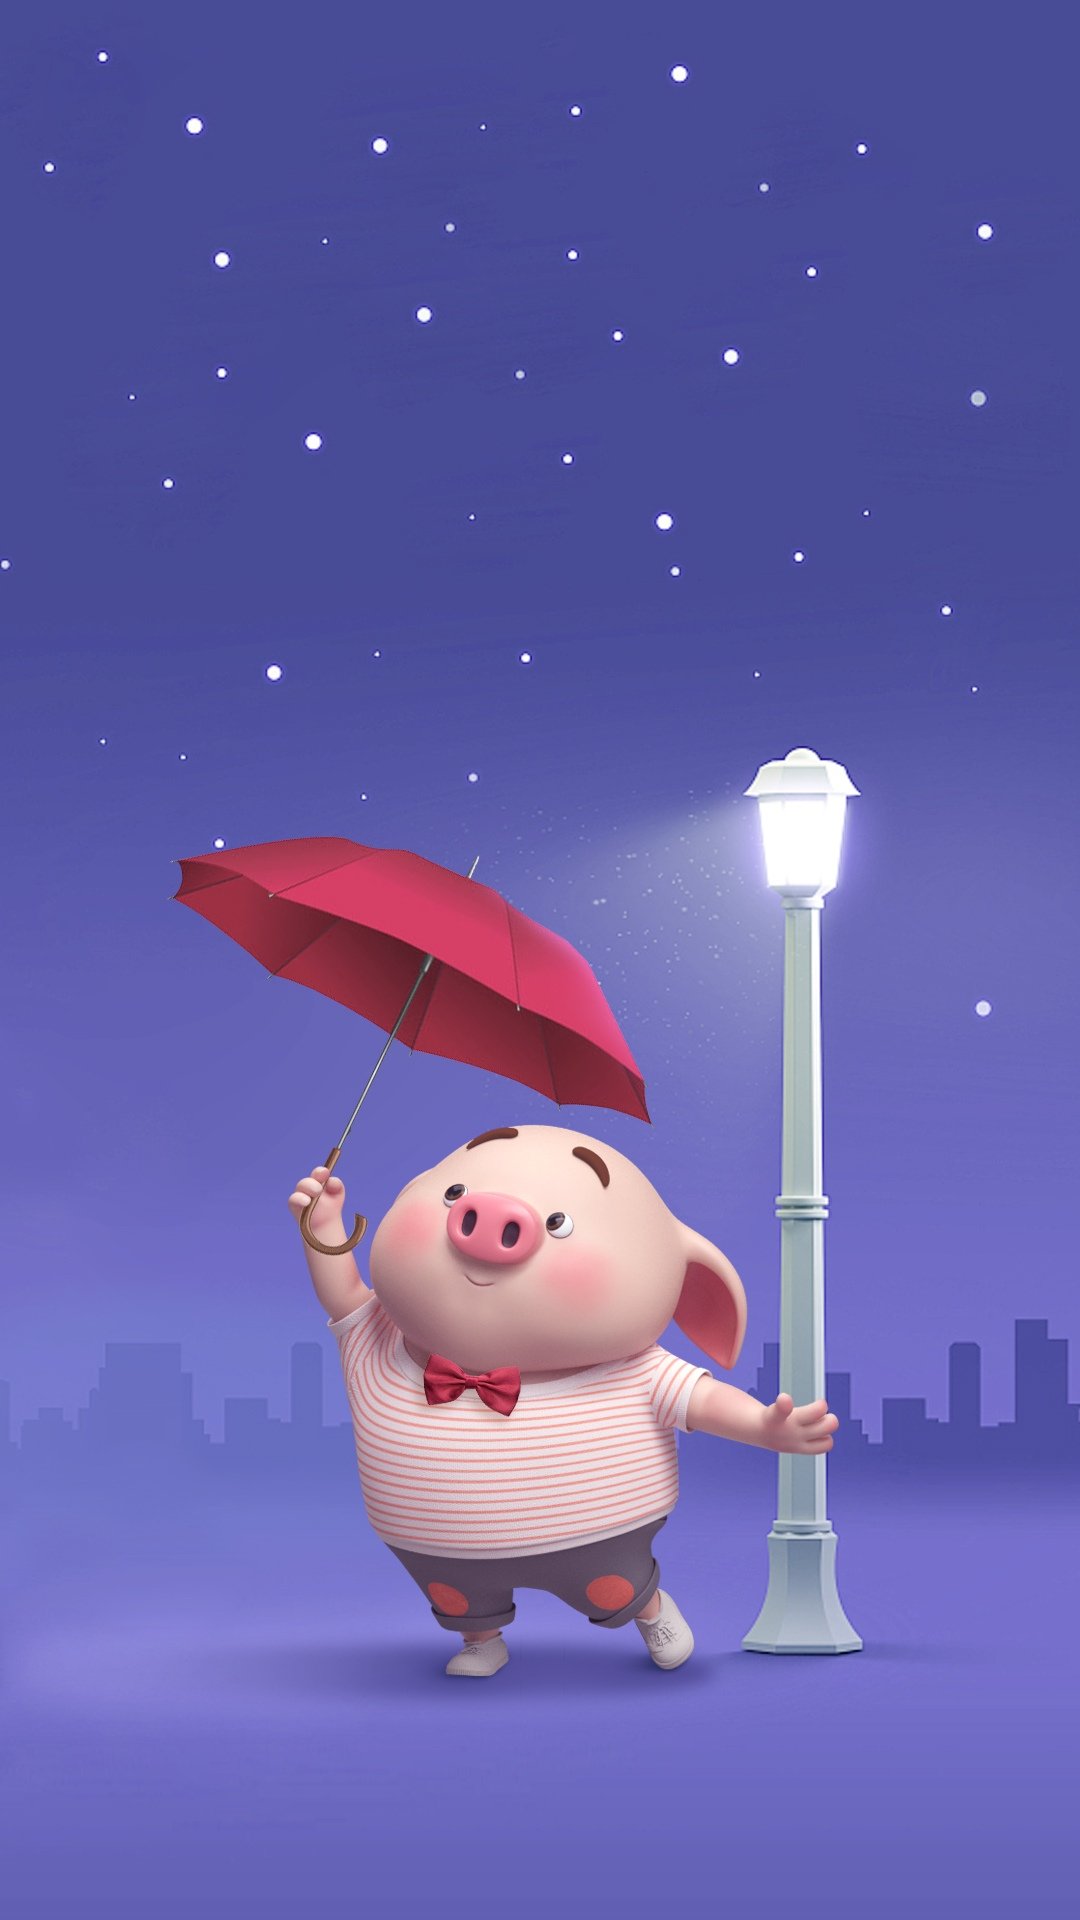 猪小屁:一个人打伞,高清图片,手机壁纸